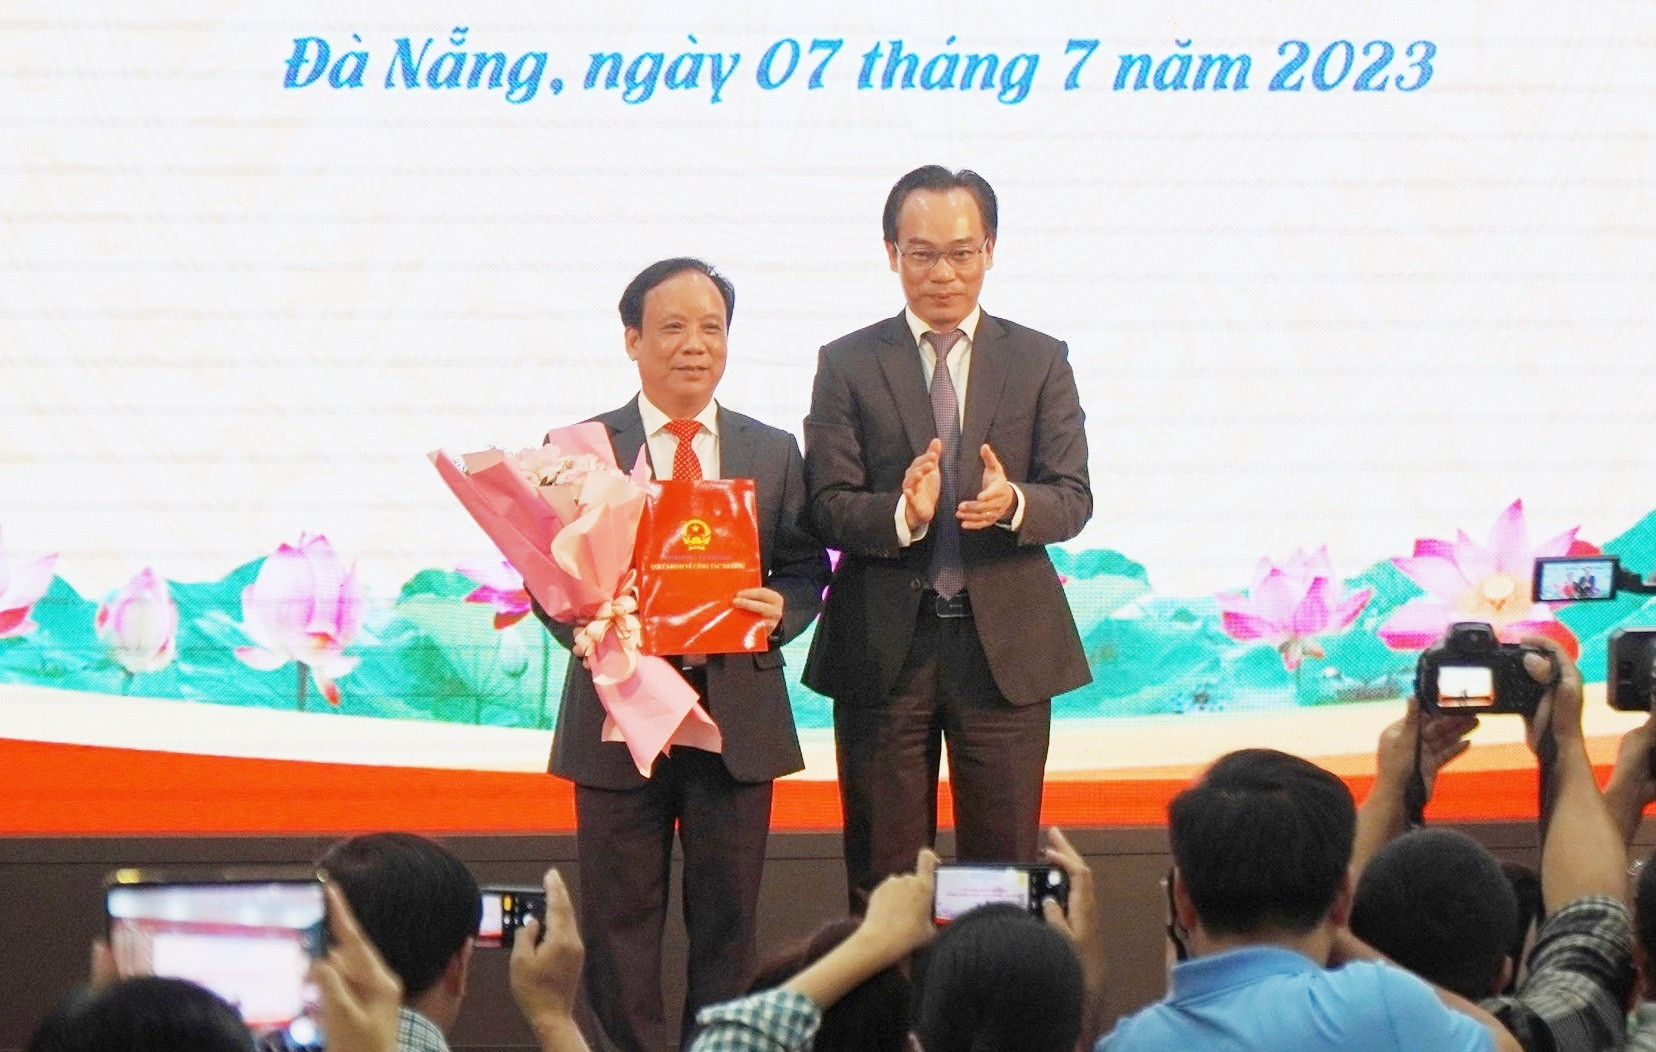 Thứ trưởng Bộ GD&ĐT Hoàng Minh Sơn trao Quyết định và tặng hoa chúc mừng Giám đốc Nguyễn Ngọc Vũ. Anhr NTB